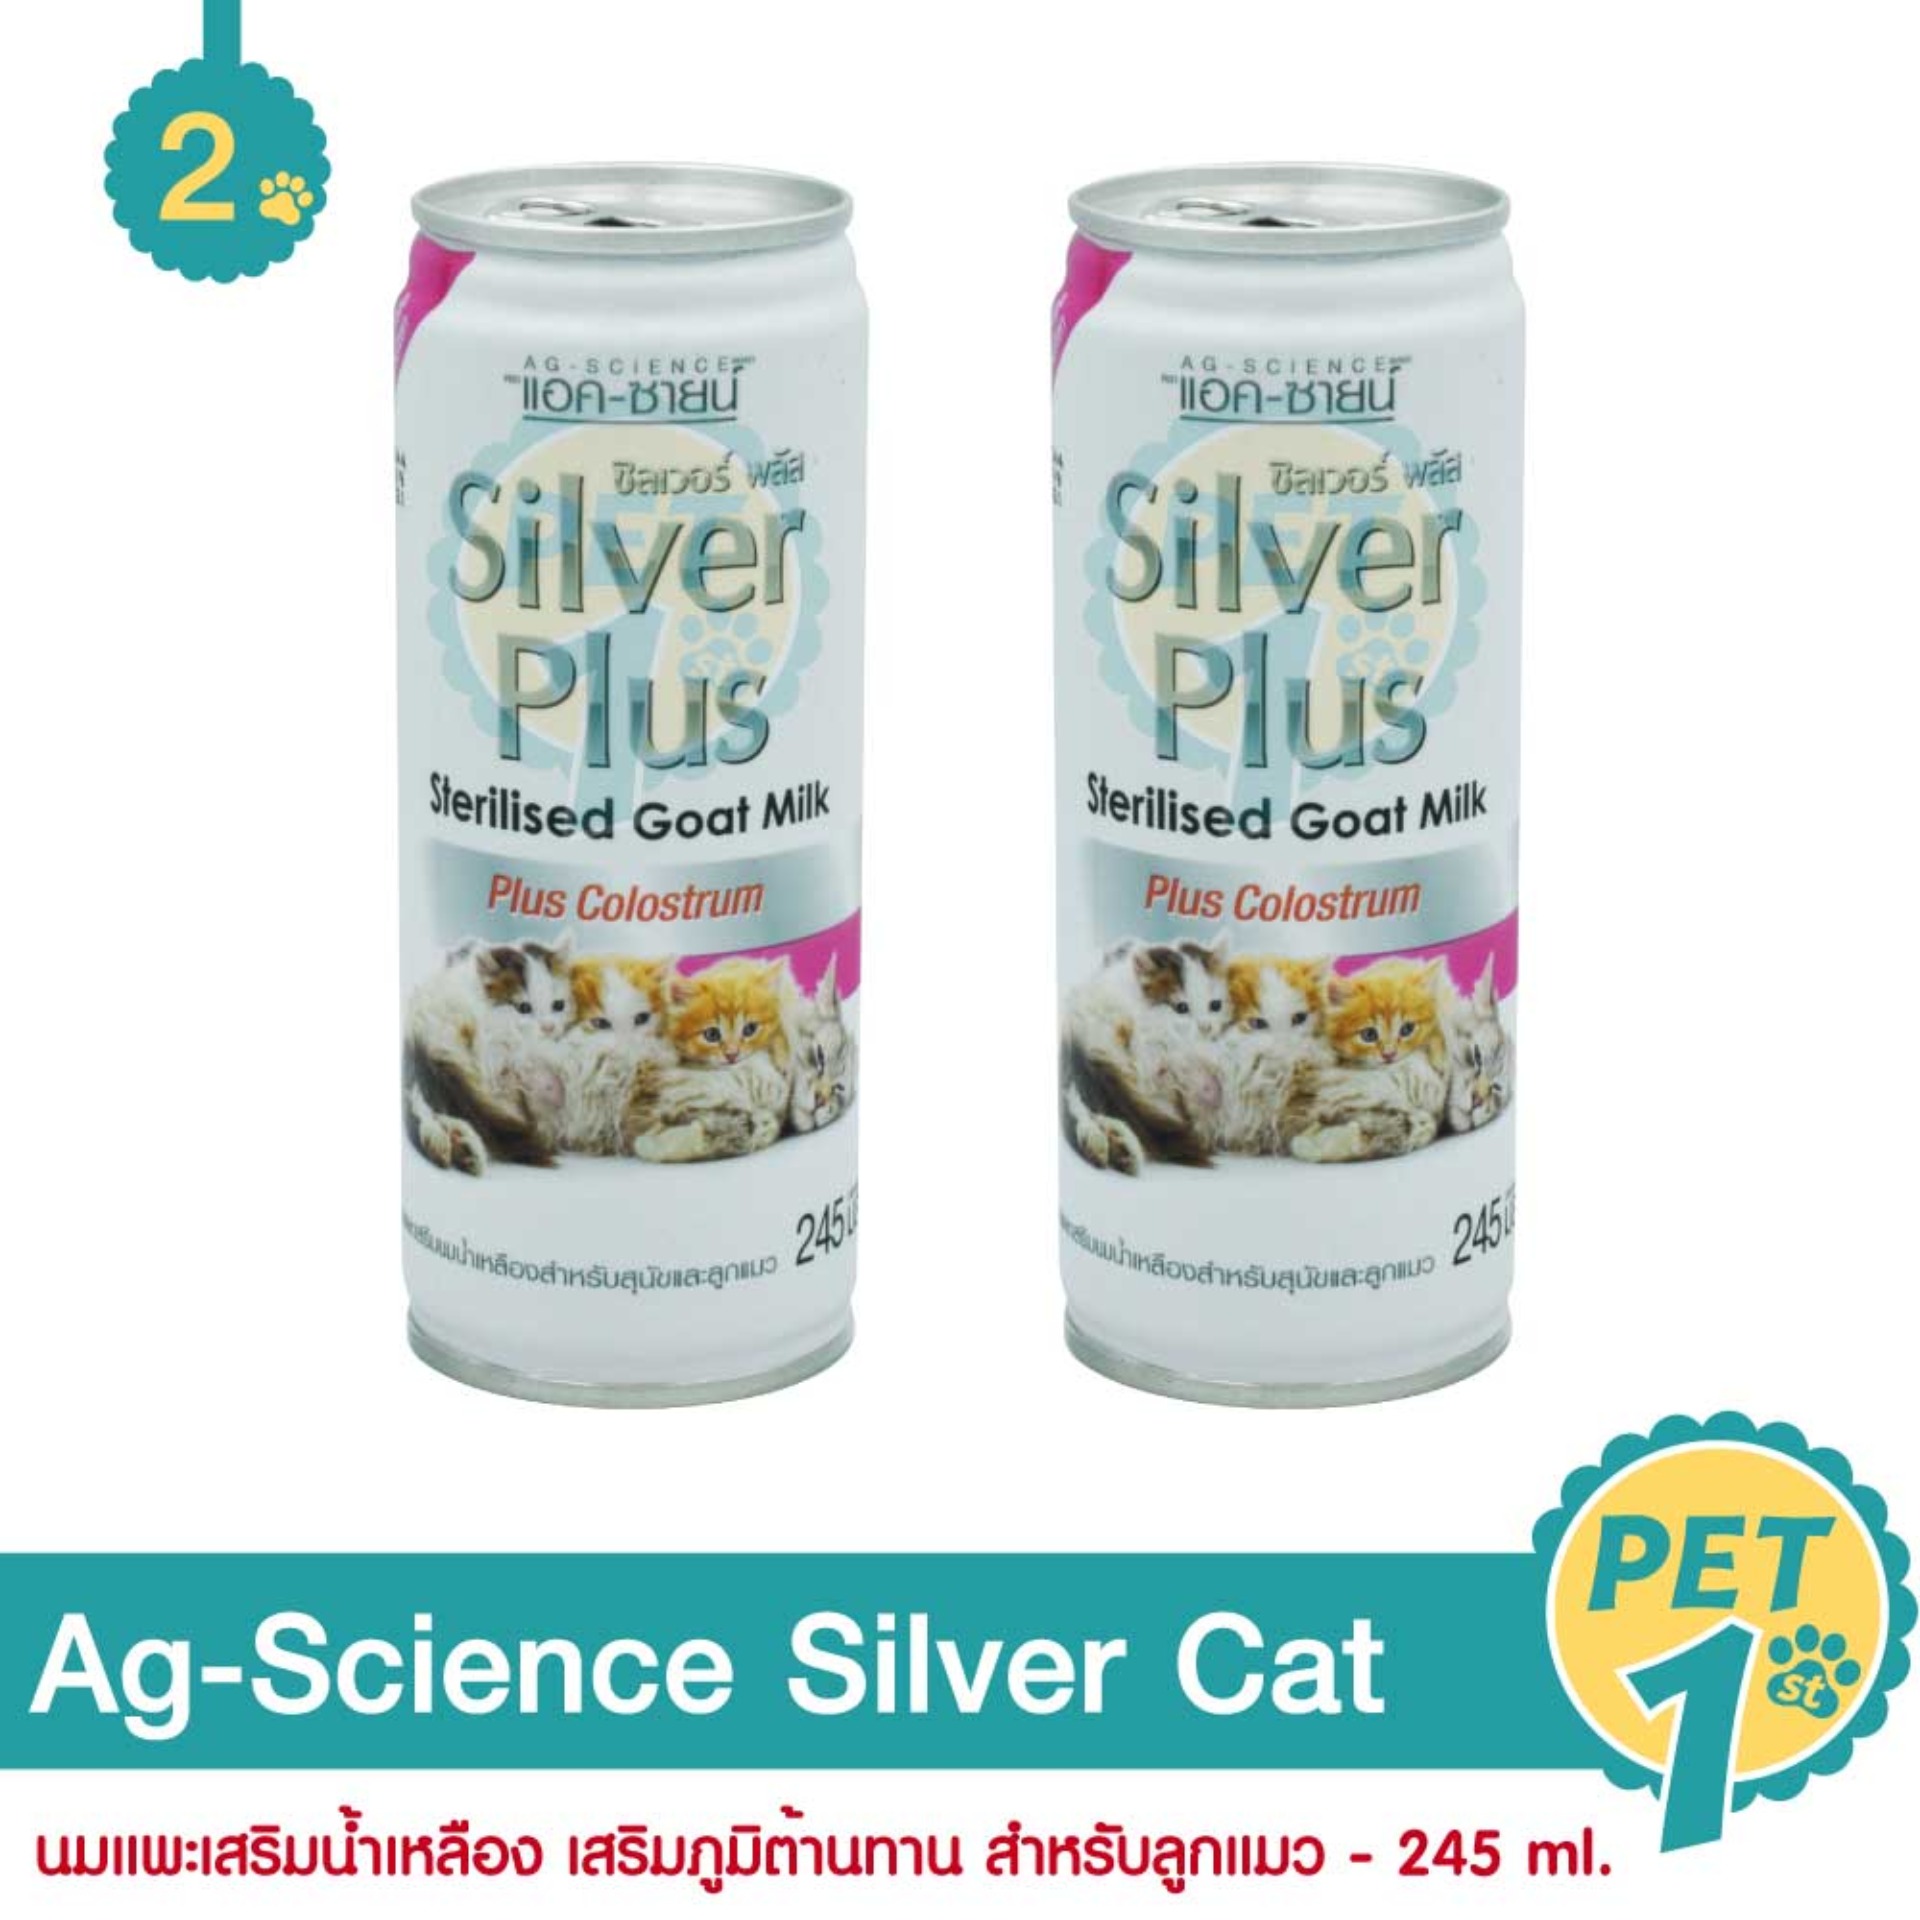 Ag-Science Silver Cat 245 ml. นมแพะเสริมน้ำเหลือง เสริมภูมิต้านทาน สำหรับลูกแมว 245 มล. - 2 กระป๋อง